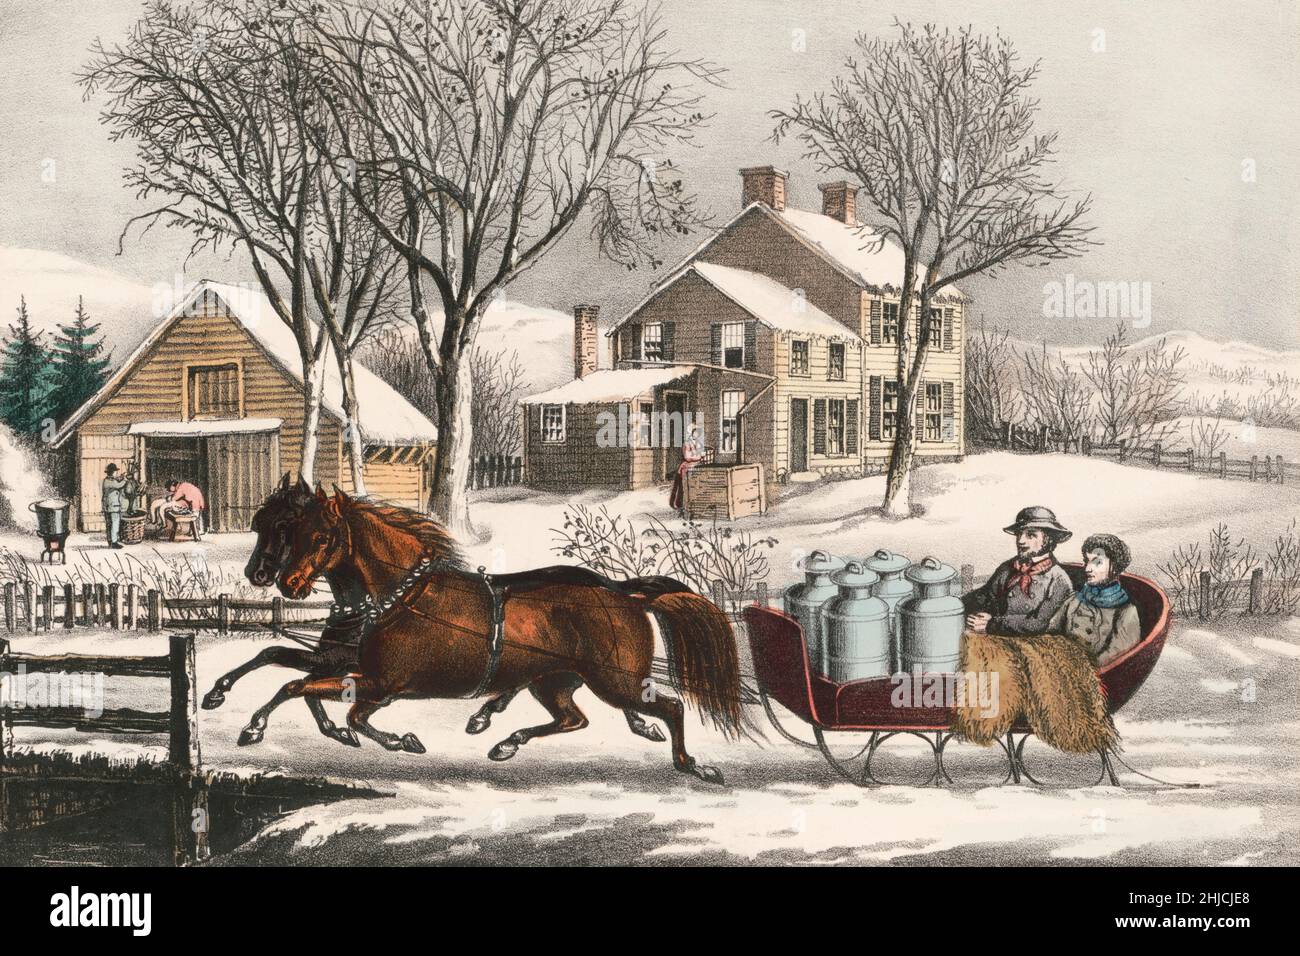 Verschneite amerikanische Wintermorgen auf dem Land. Das Bild zeigt zwei Personen, die in einem Pferdeschlitten mit vier Milchdosen reiten. Handkolorierte Lithographie, Currier und Ives, 1873. Stockfoto